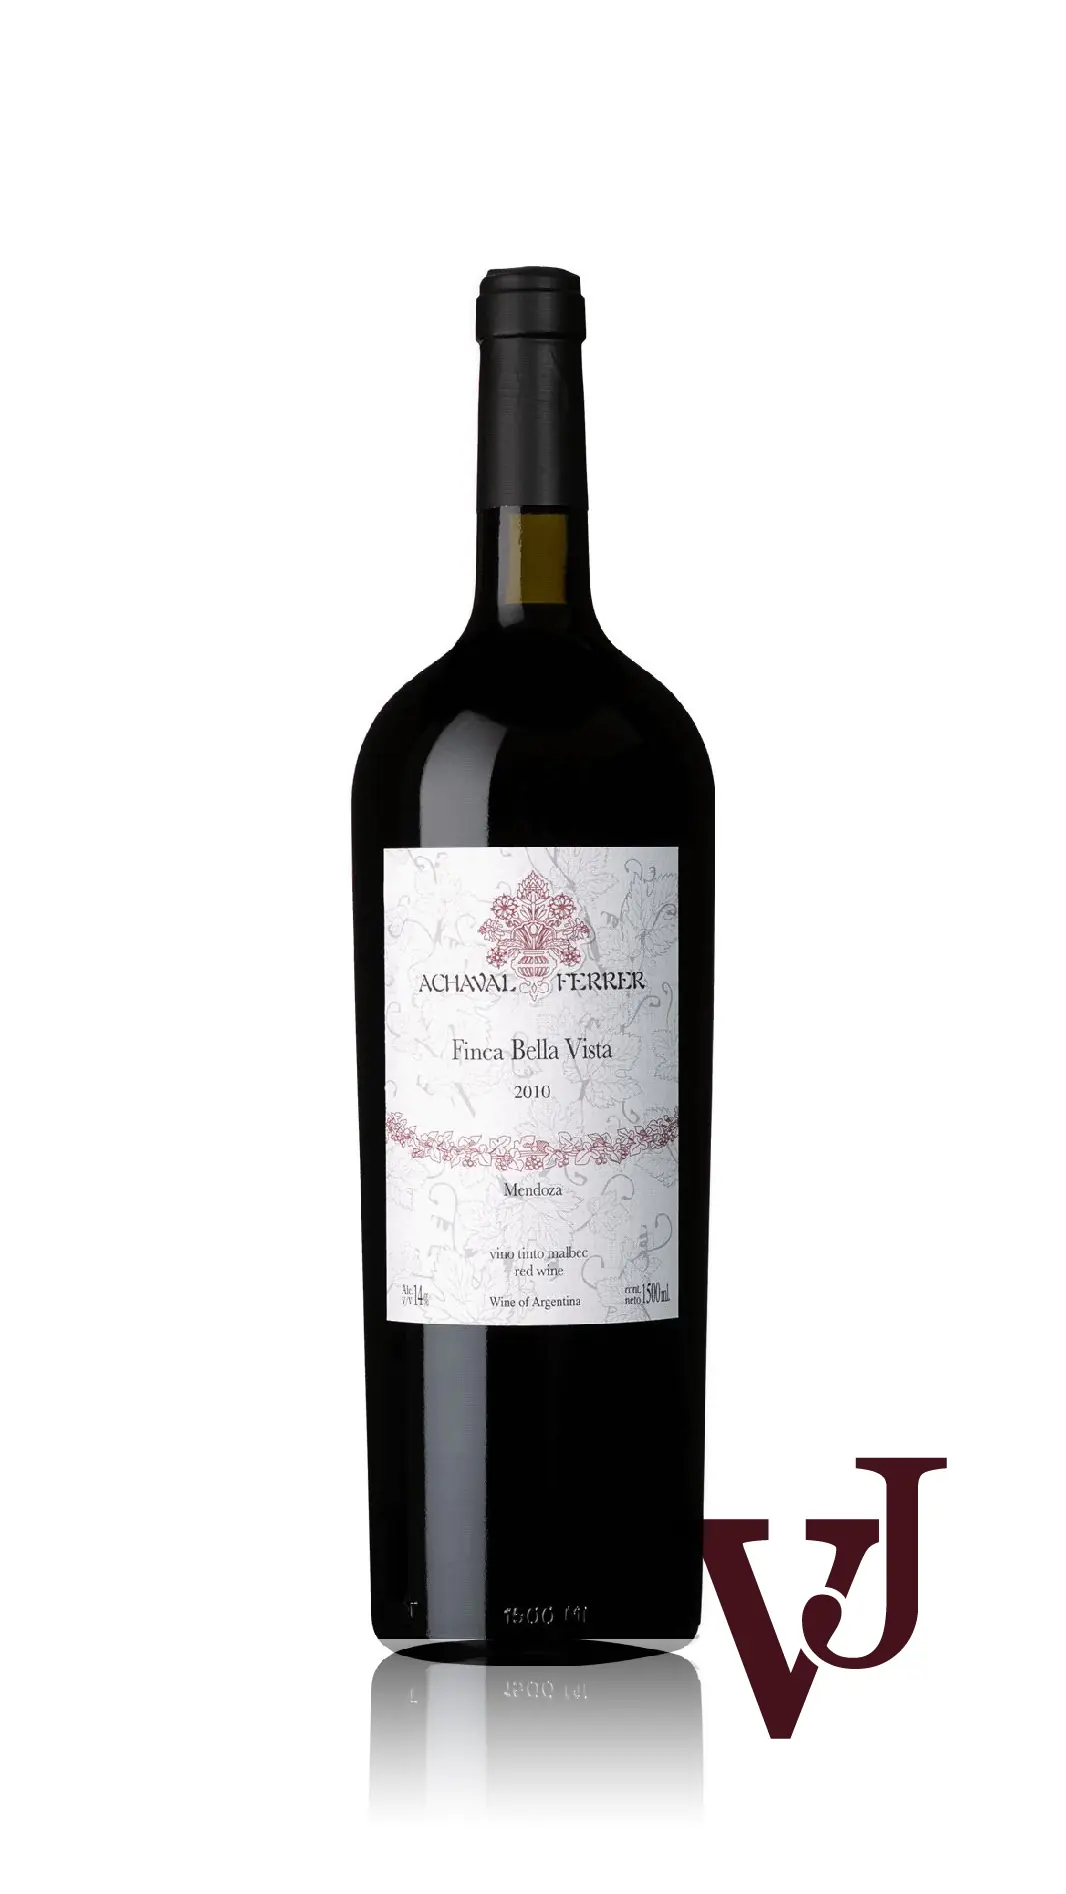 Rött Vin - Finca Bella Vista Achaval-Ferrer artikel nummer 9592906 från producenten Achaval-Ferrer från området Argentina - Vinjournalen.se